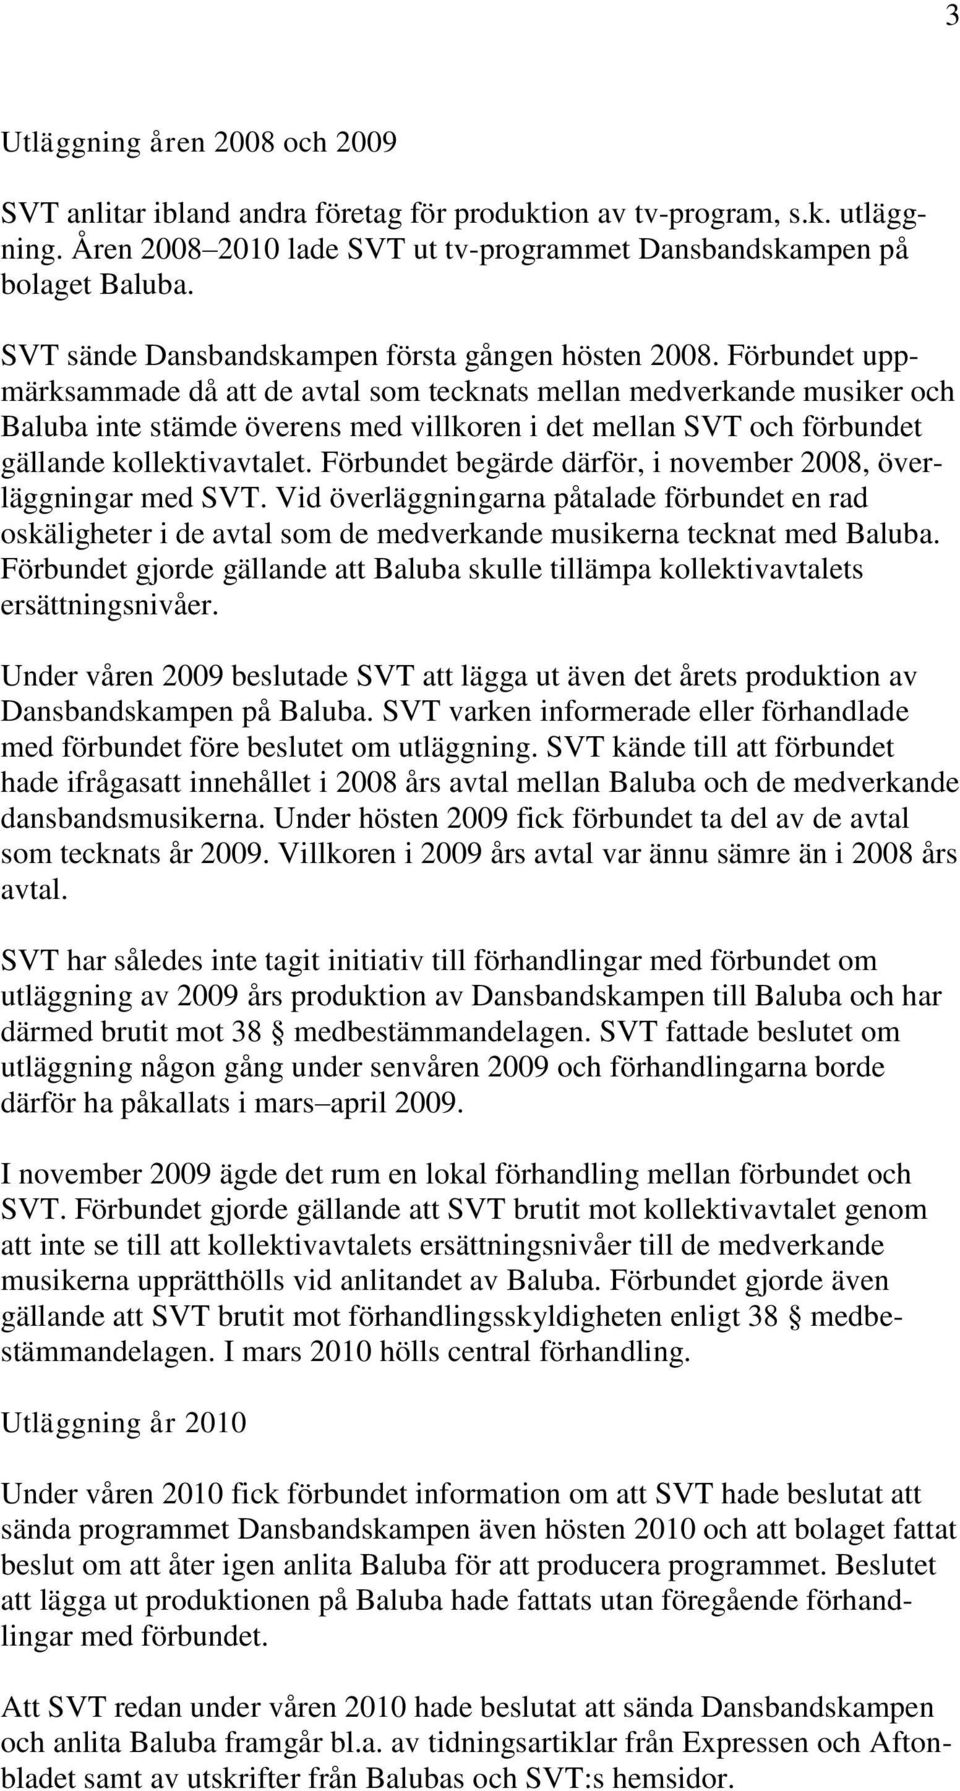 Förbundet uppmärksammade då att de avtal som tecknats mellan medverkande musiker och Baluba inte stämde överens med villkoren i det mellan SVT och förbundet gällande kollektivavtalet.